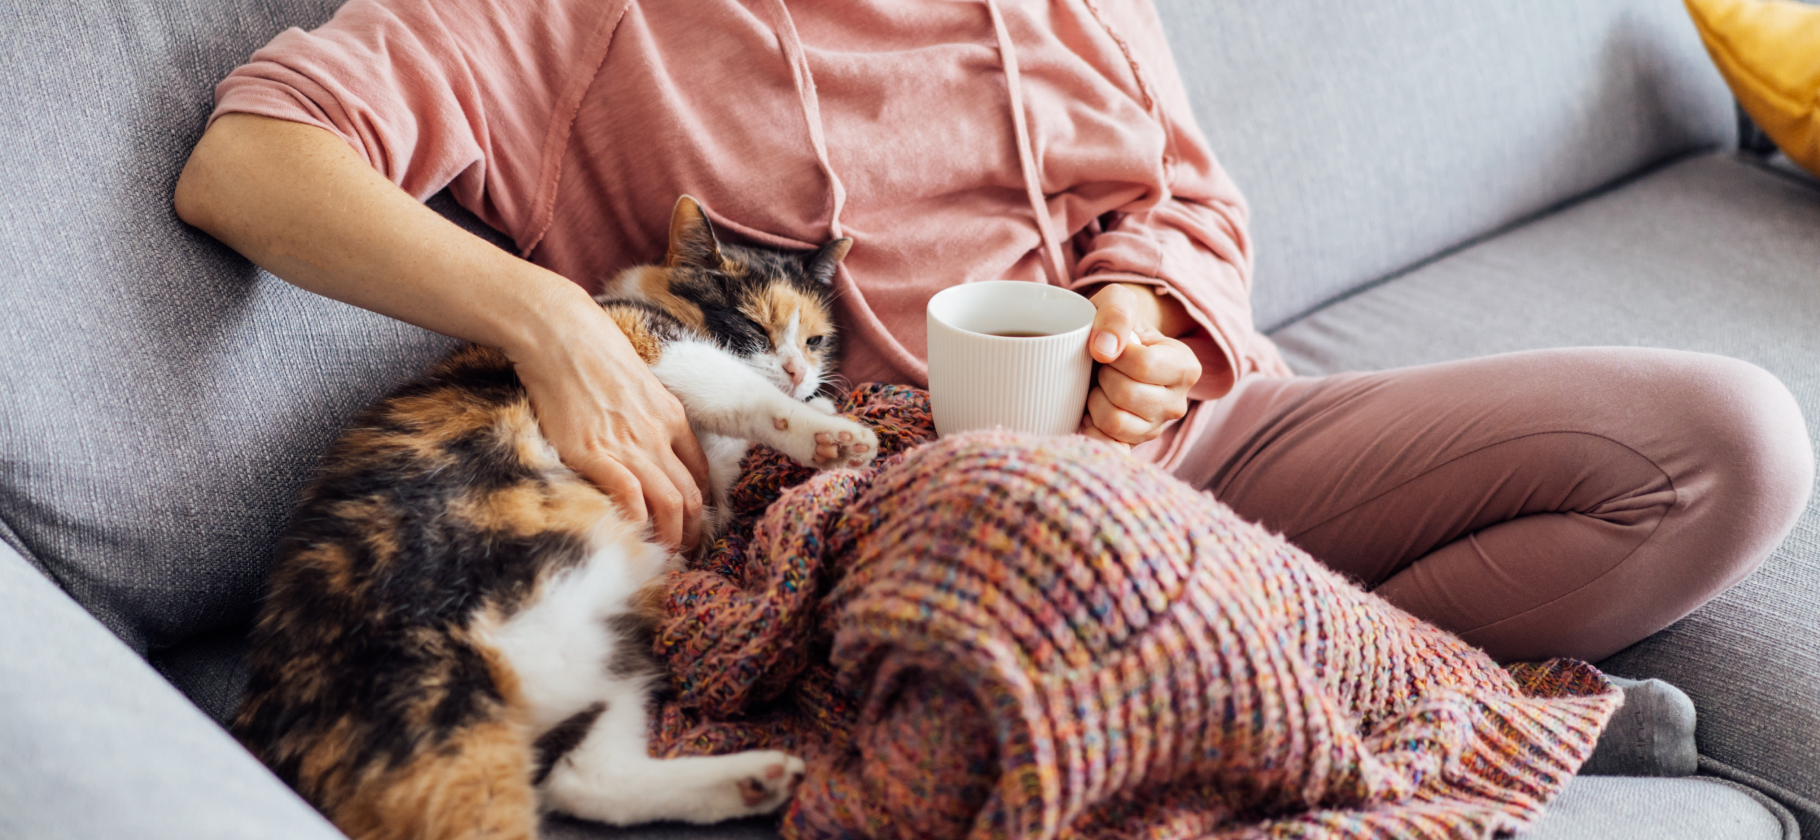 «Носки, толстовка и горячий чай»: 7 проверенных способов согреться дома в холодные дни